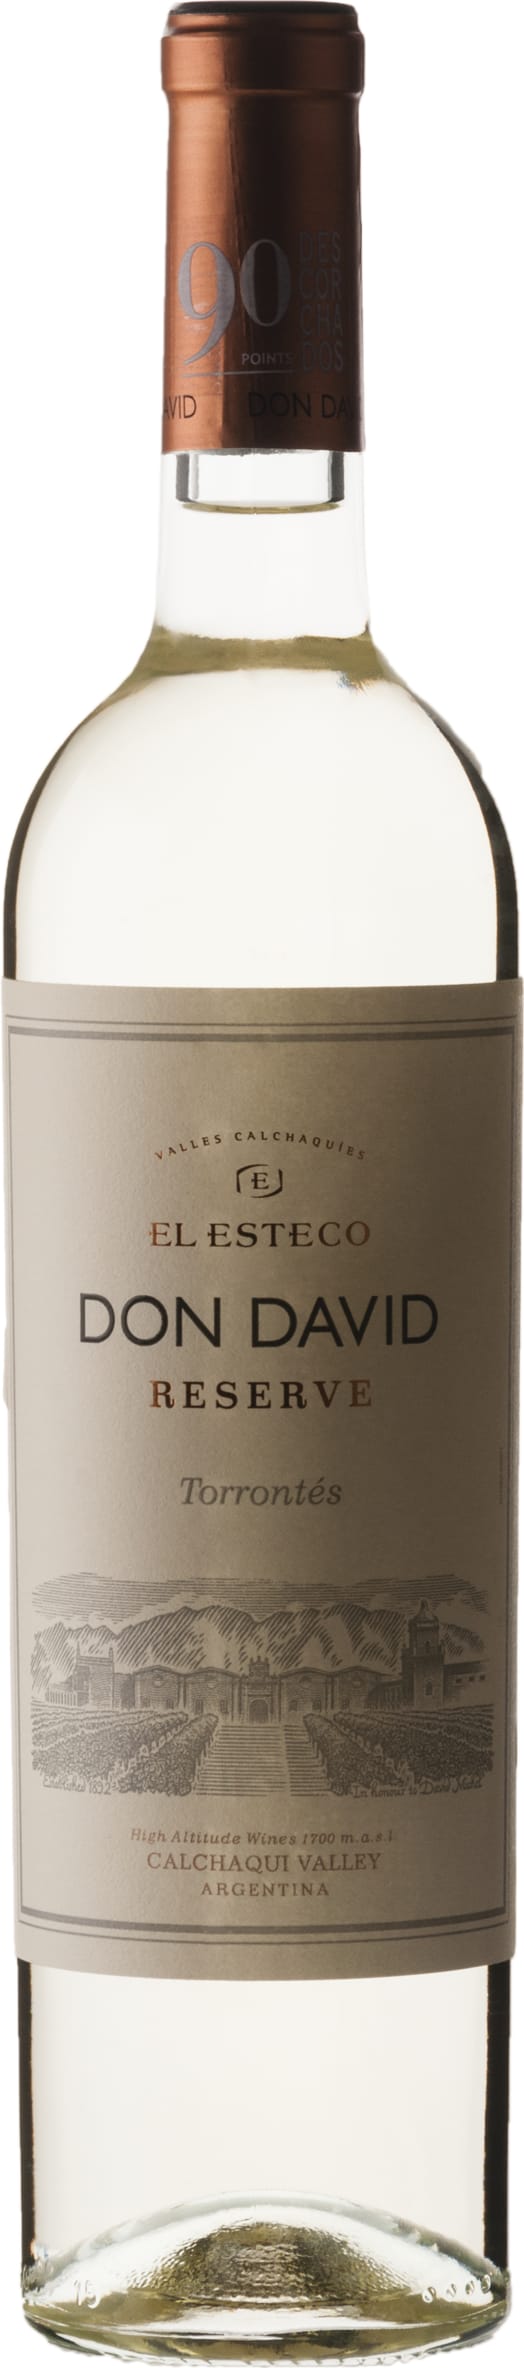 El Esteco Don David Torrontes 2022 75cl - Buy El Esteco Wines from GREAT WINES DIRECT wine shop